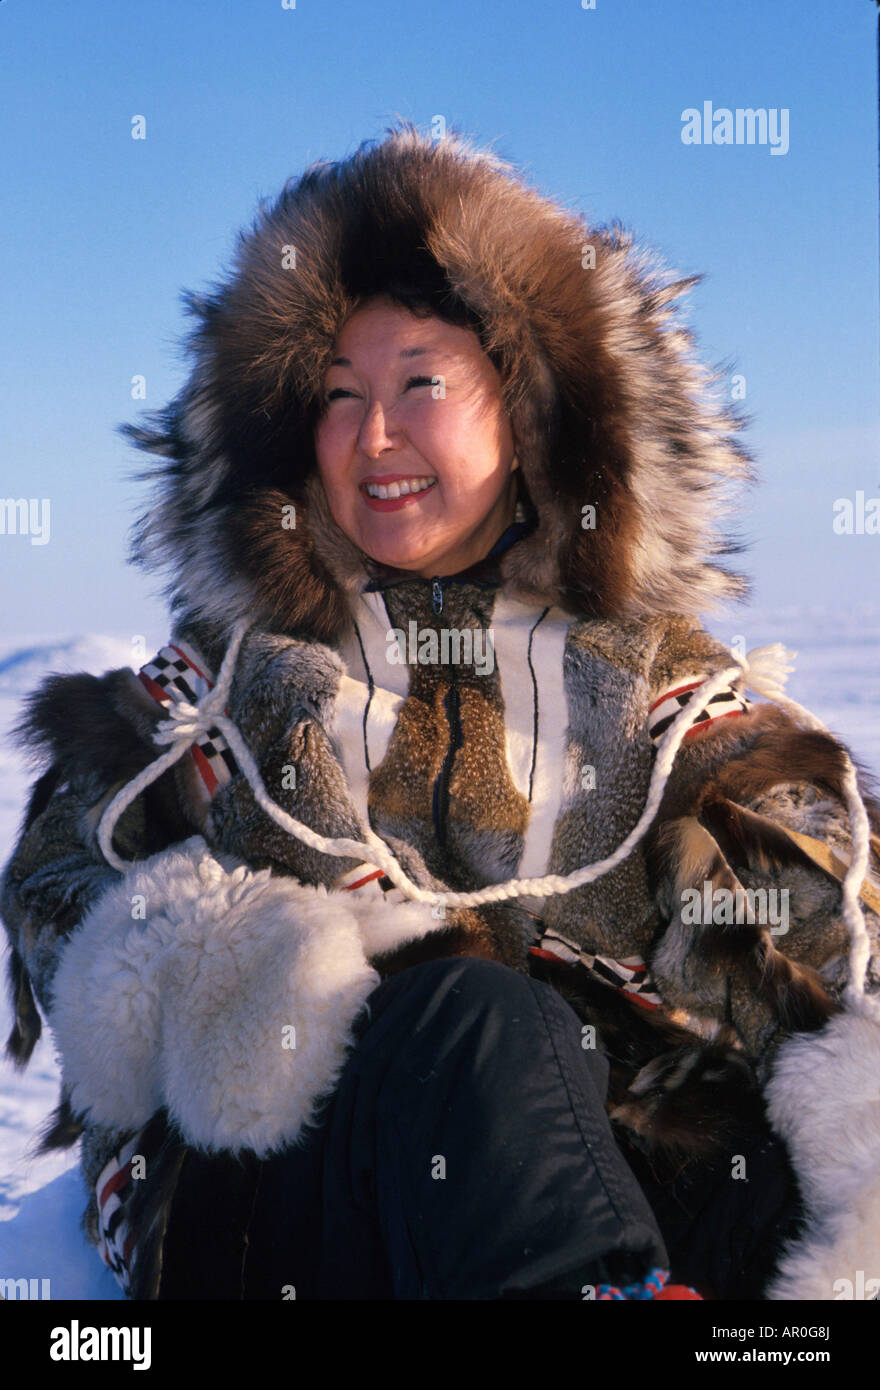 Inupiat Eskimo Woman in Fur Parka Nome AK Winter Stock Photo: 15898721 ...